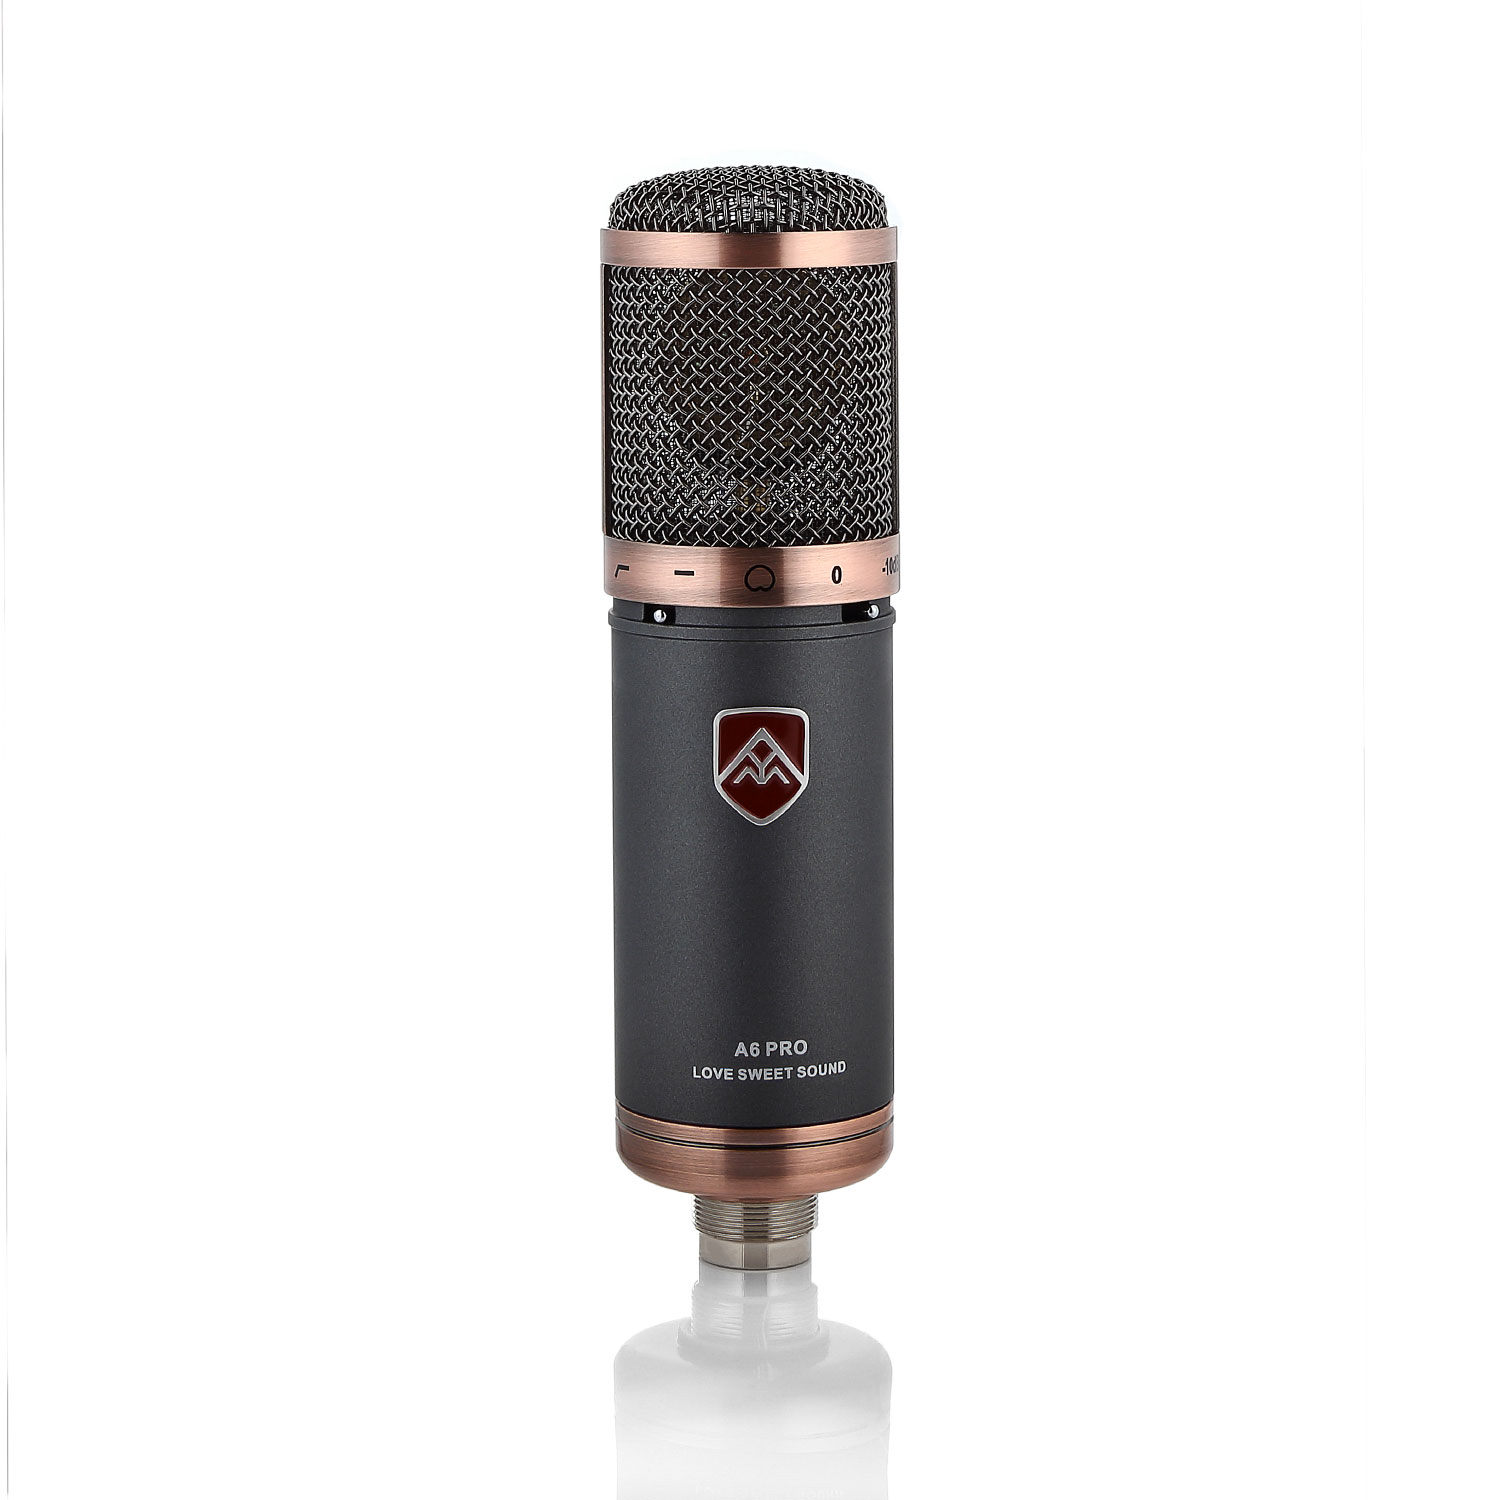 Студийные микрофоны Mice A6 PRO профессиональный bm700 конденсаторный микрофон микрофон ktv singing studio recording kit серебристый